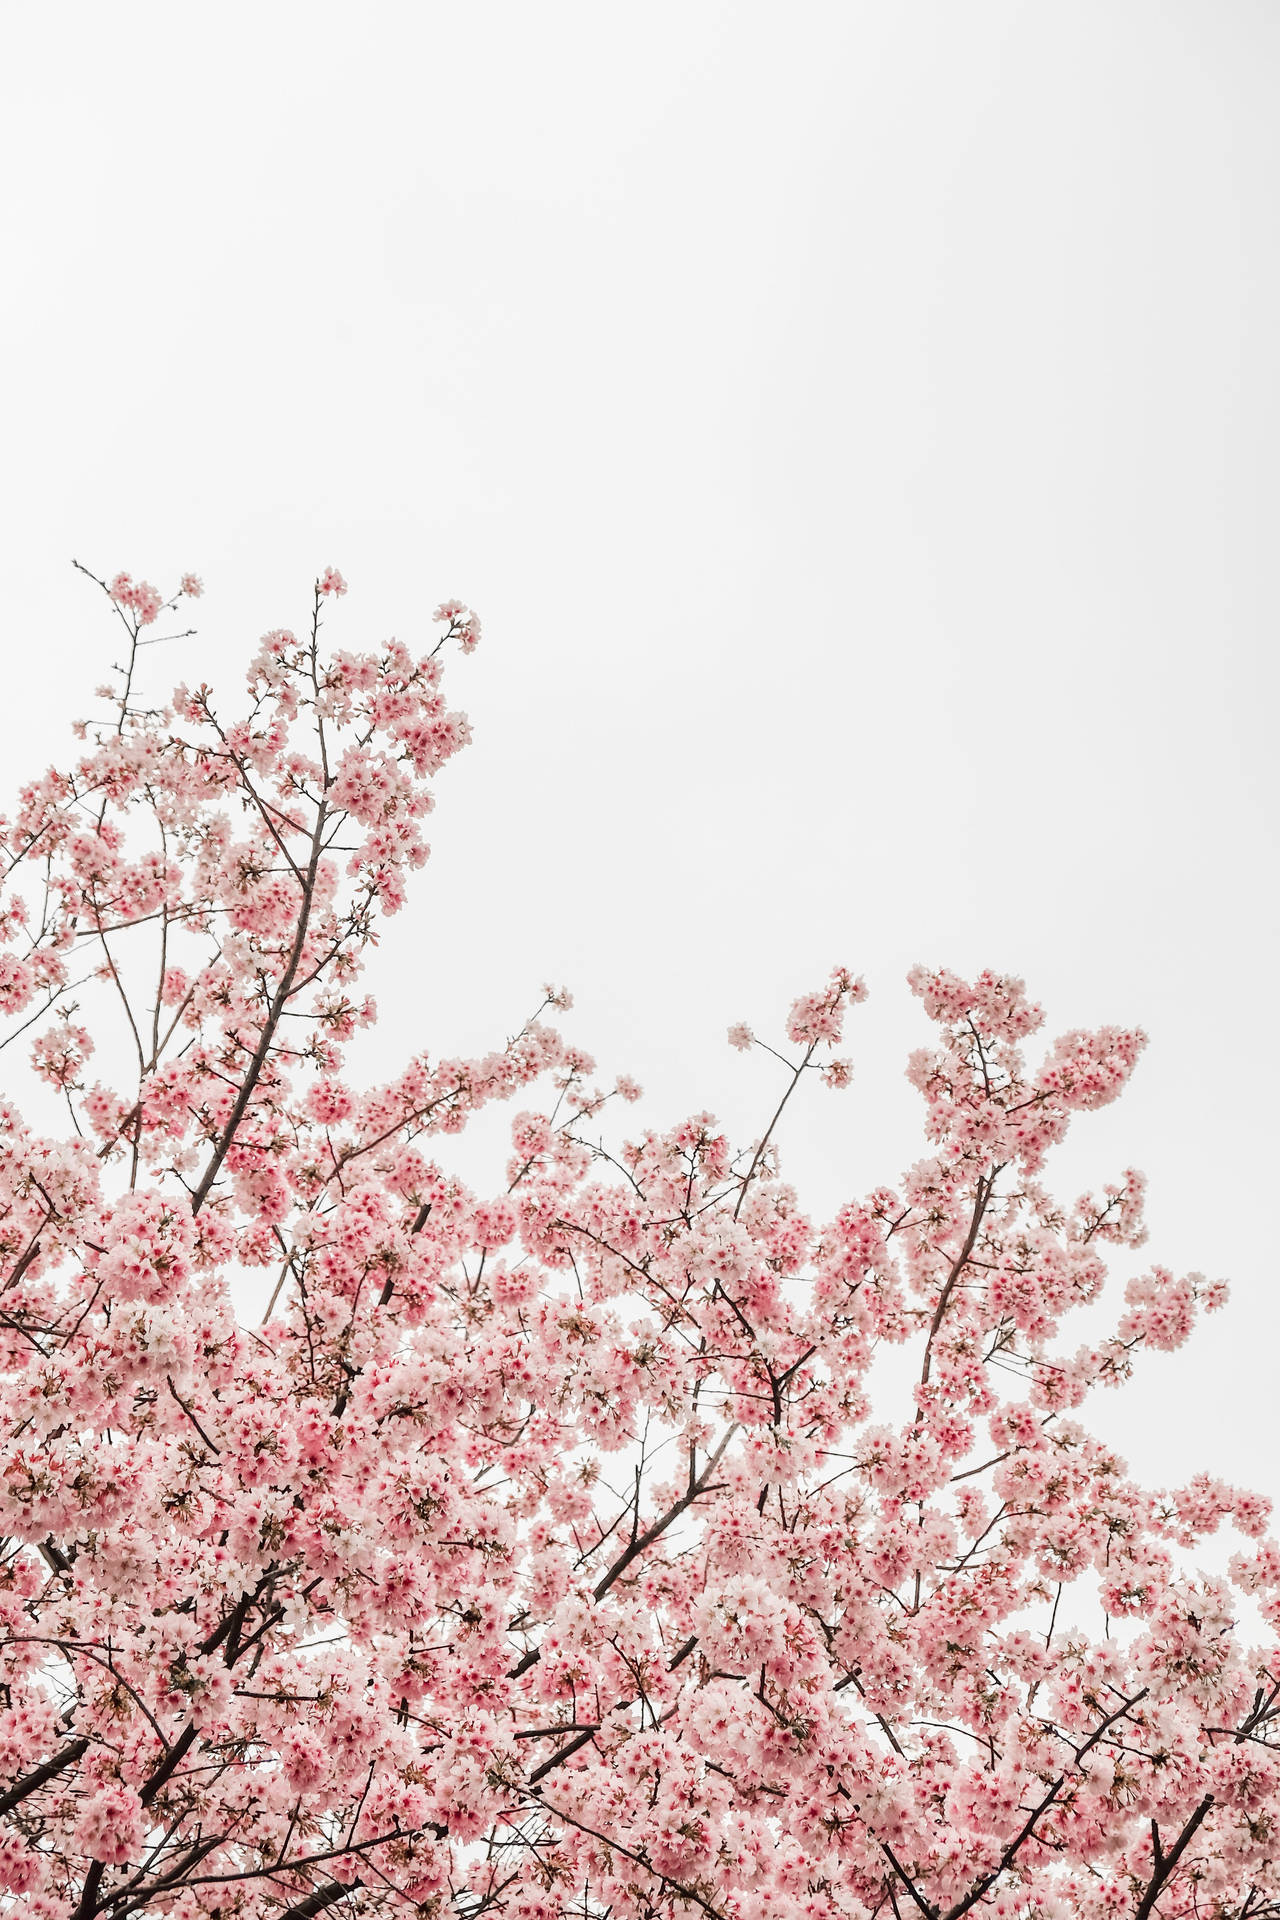 Blooming Sakura Trees During Spring Season Background